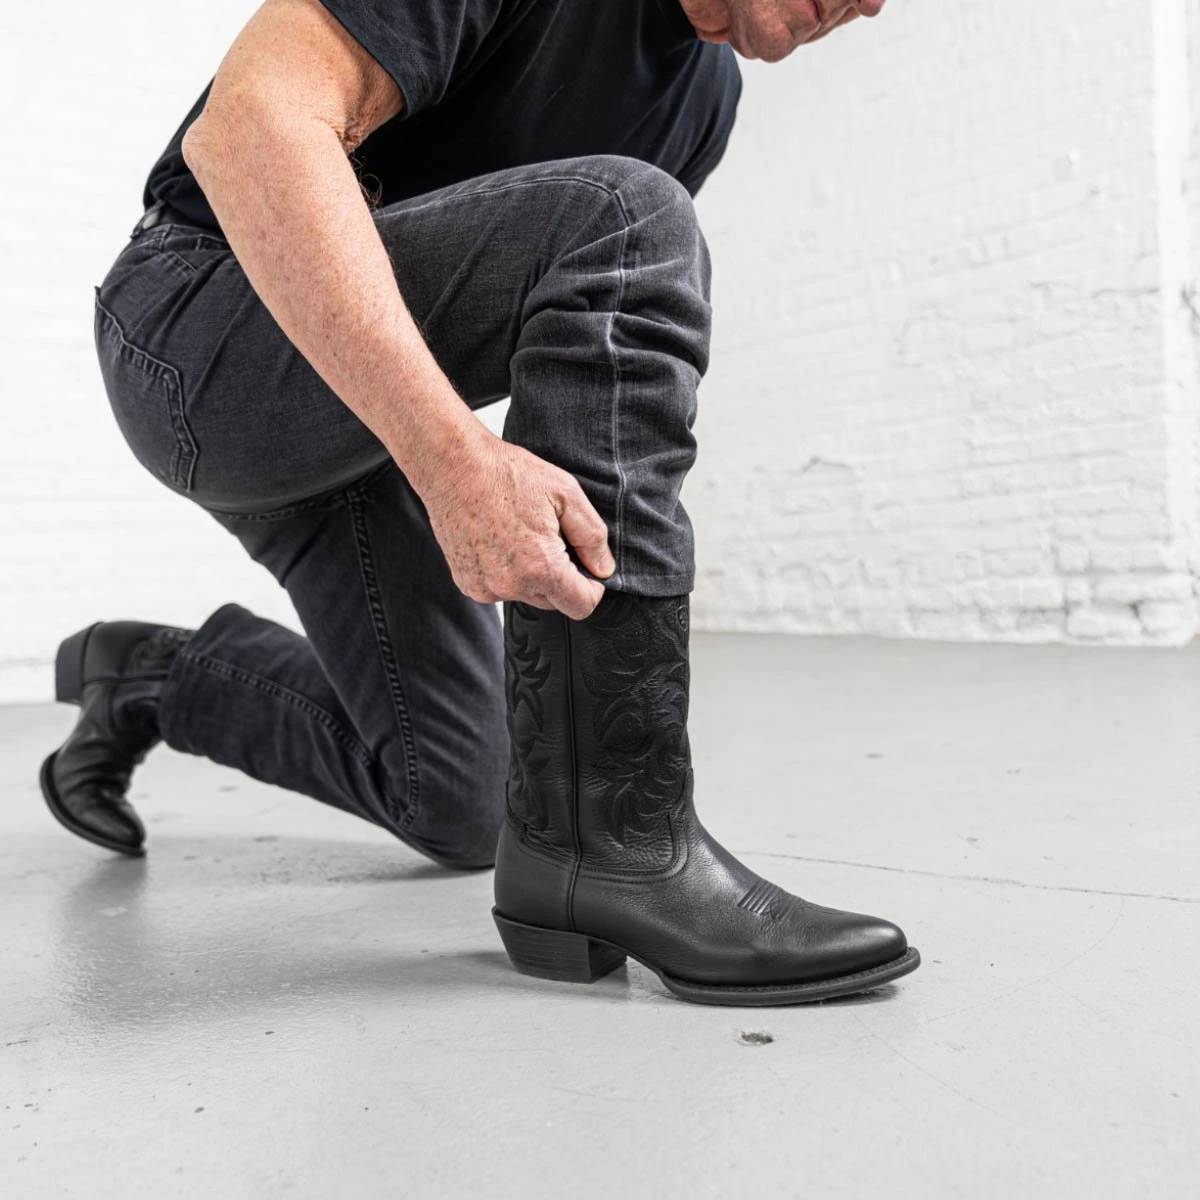 Men's Boot Cut Jeans